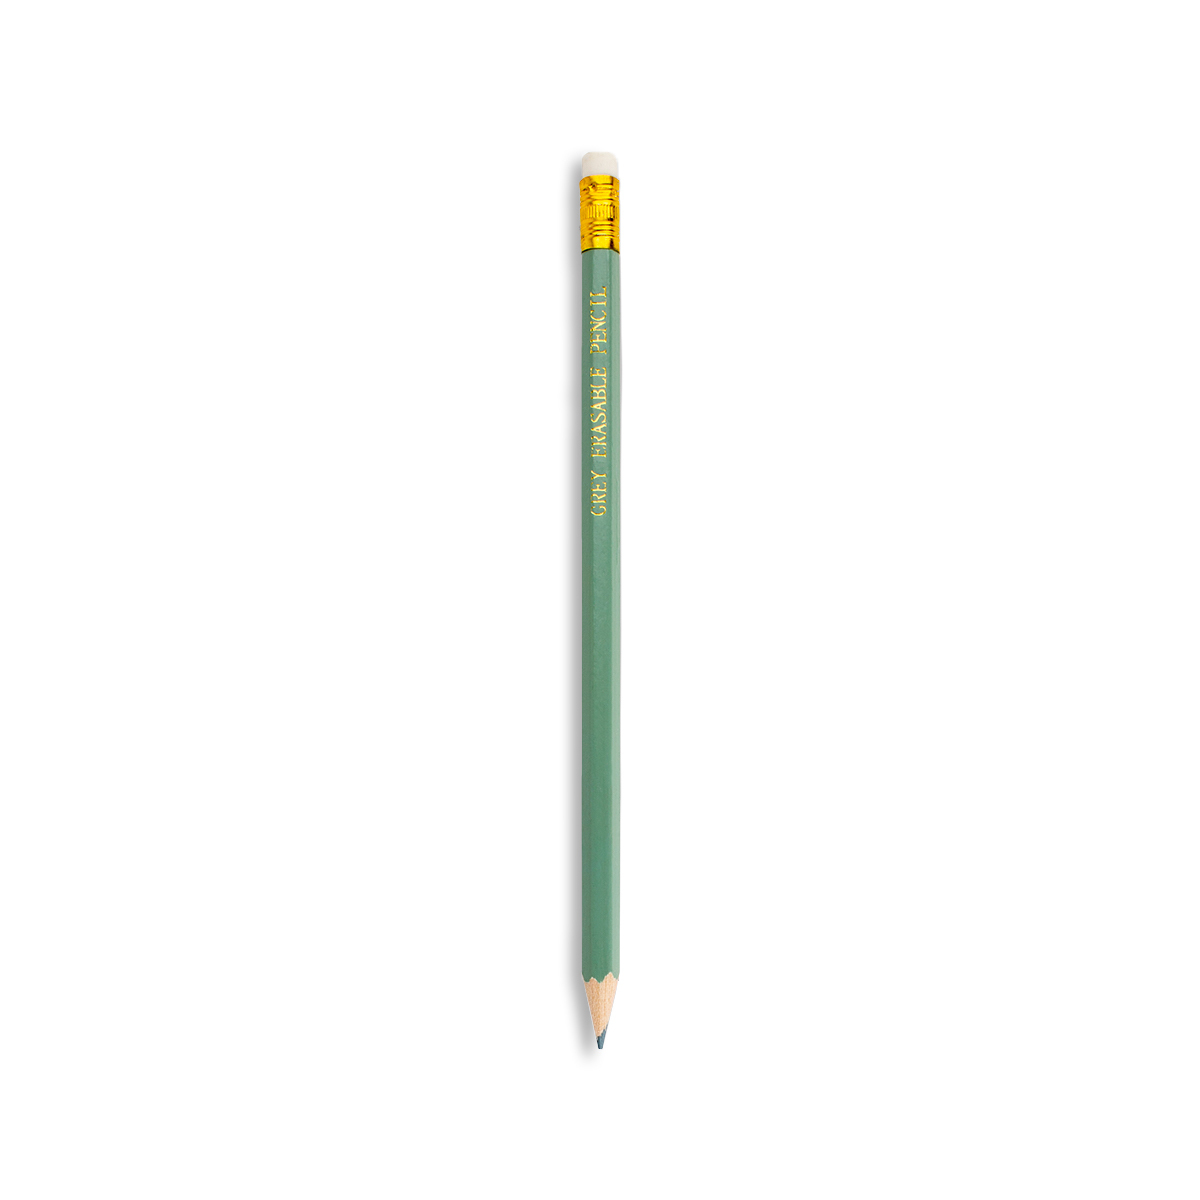 Dritz Dressmaker Pencil W/ Eraser - White - WAWAK Sewing Supplies